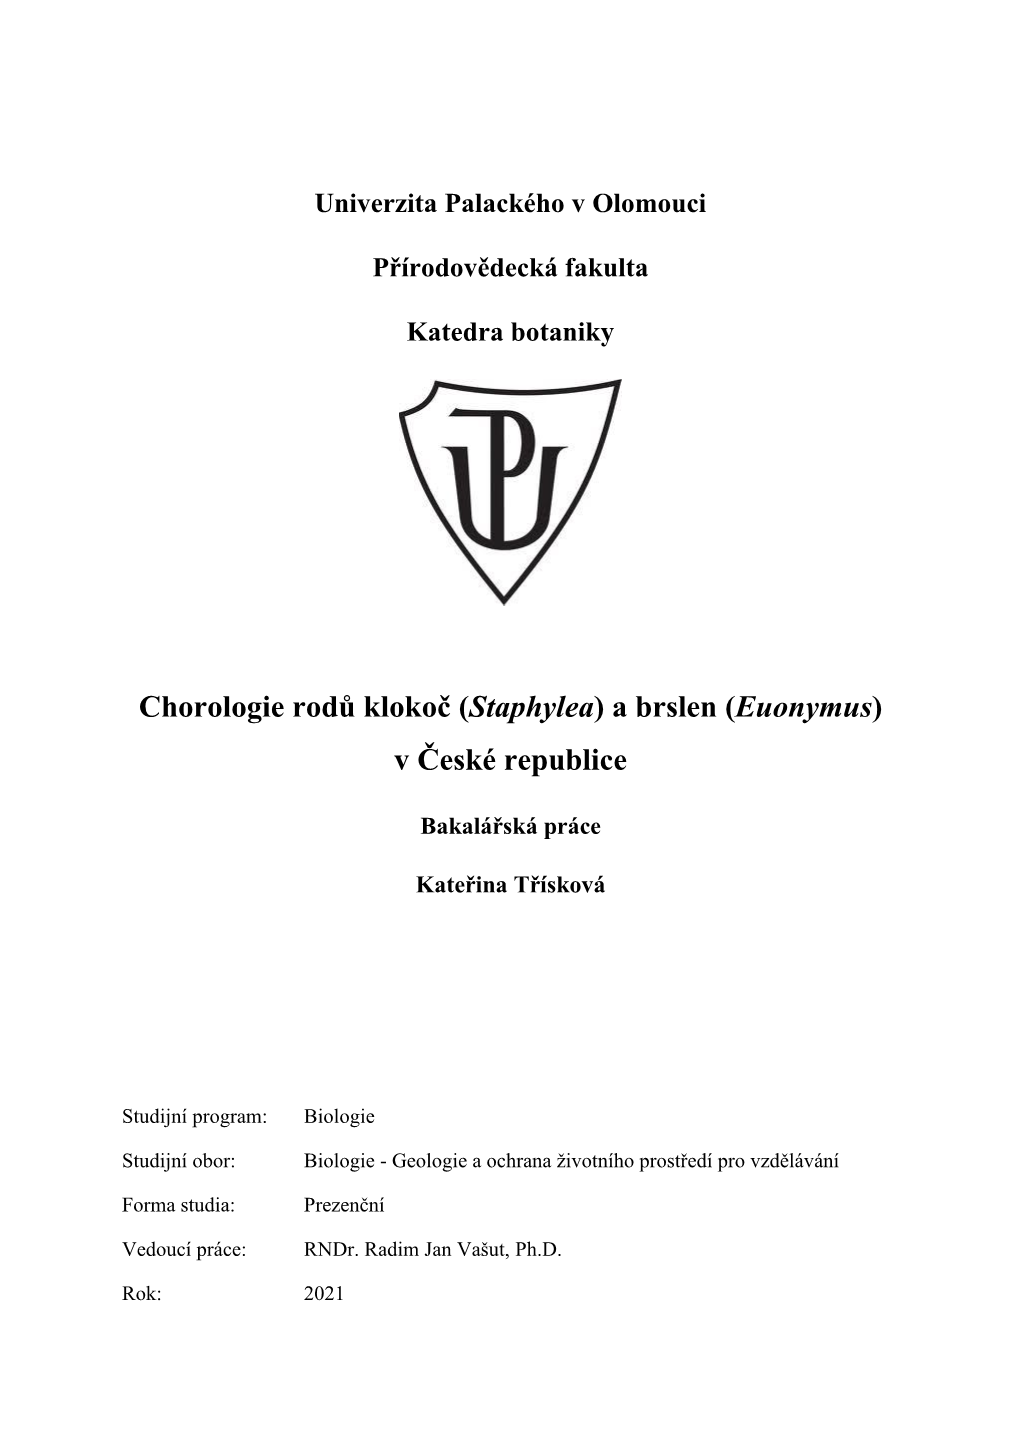 Chorologie Rodů Klokoč (Staphylea) a Brslen (Euonymus) V České Republice